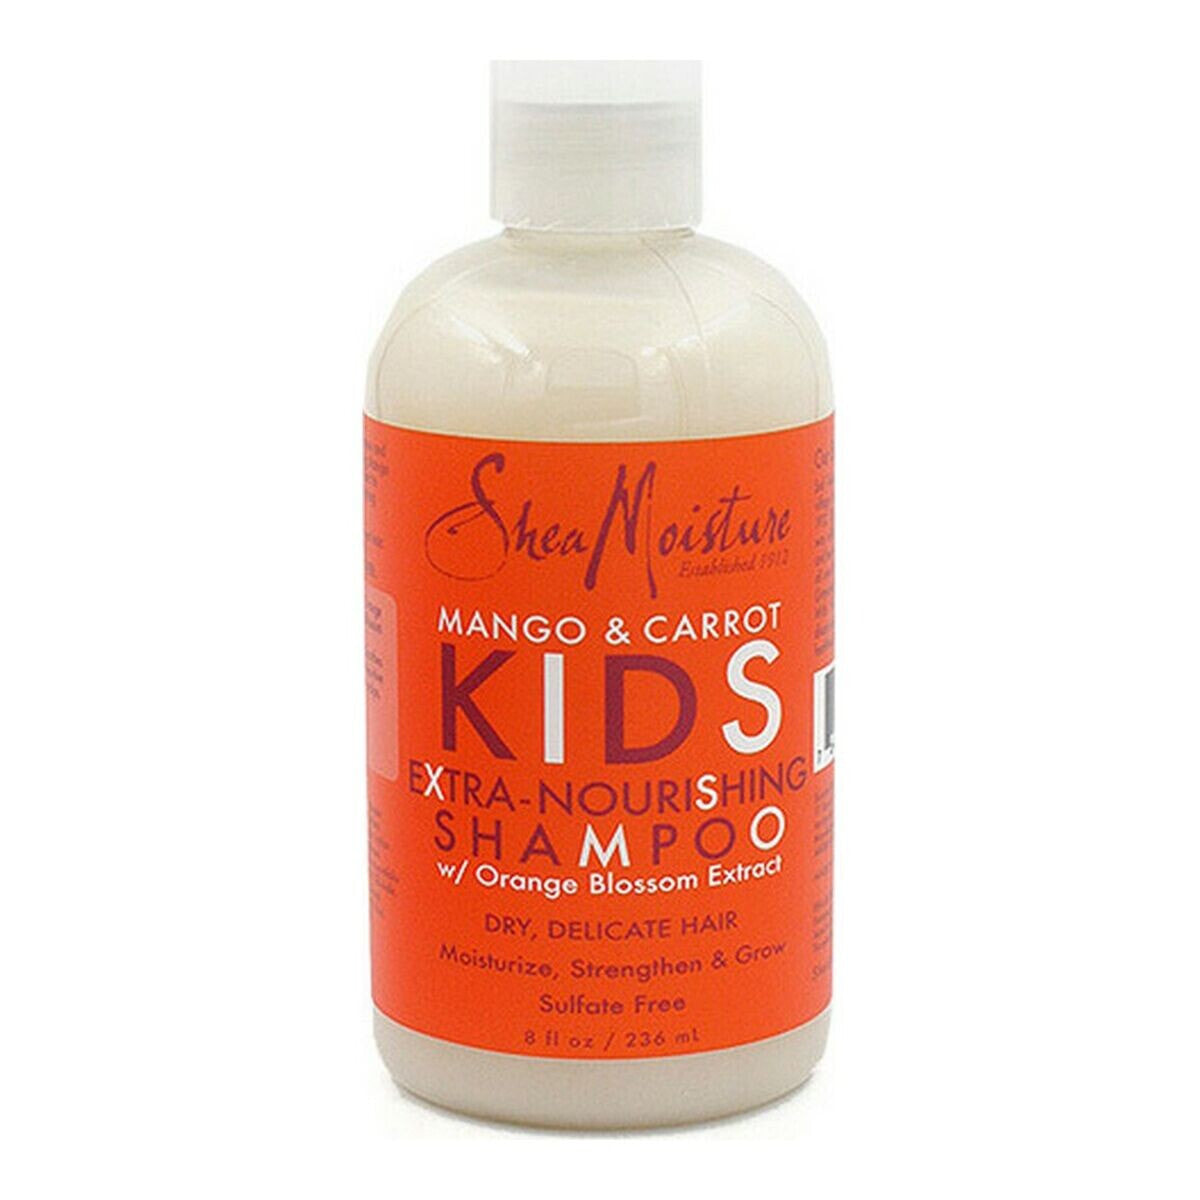 Shampoo Mango and Carrot Kids Shea Moisture 764302905004 (236 ml)